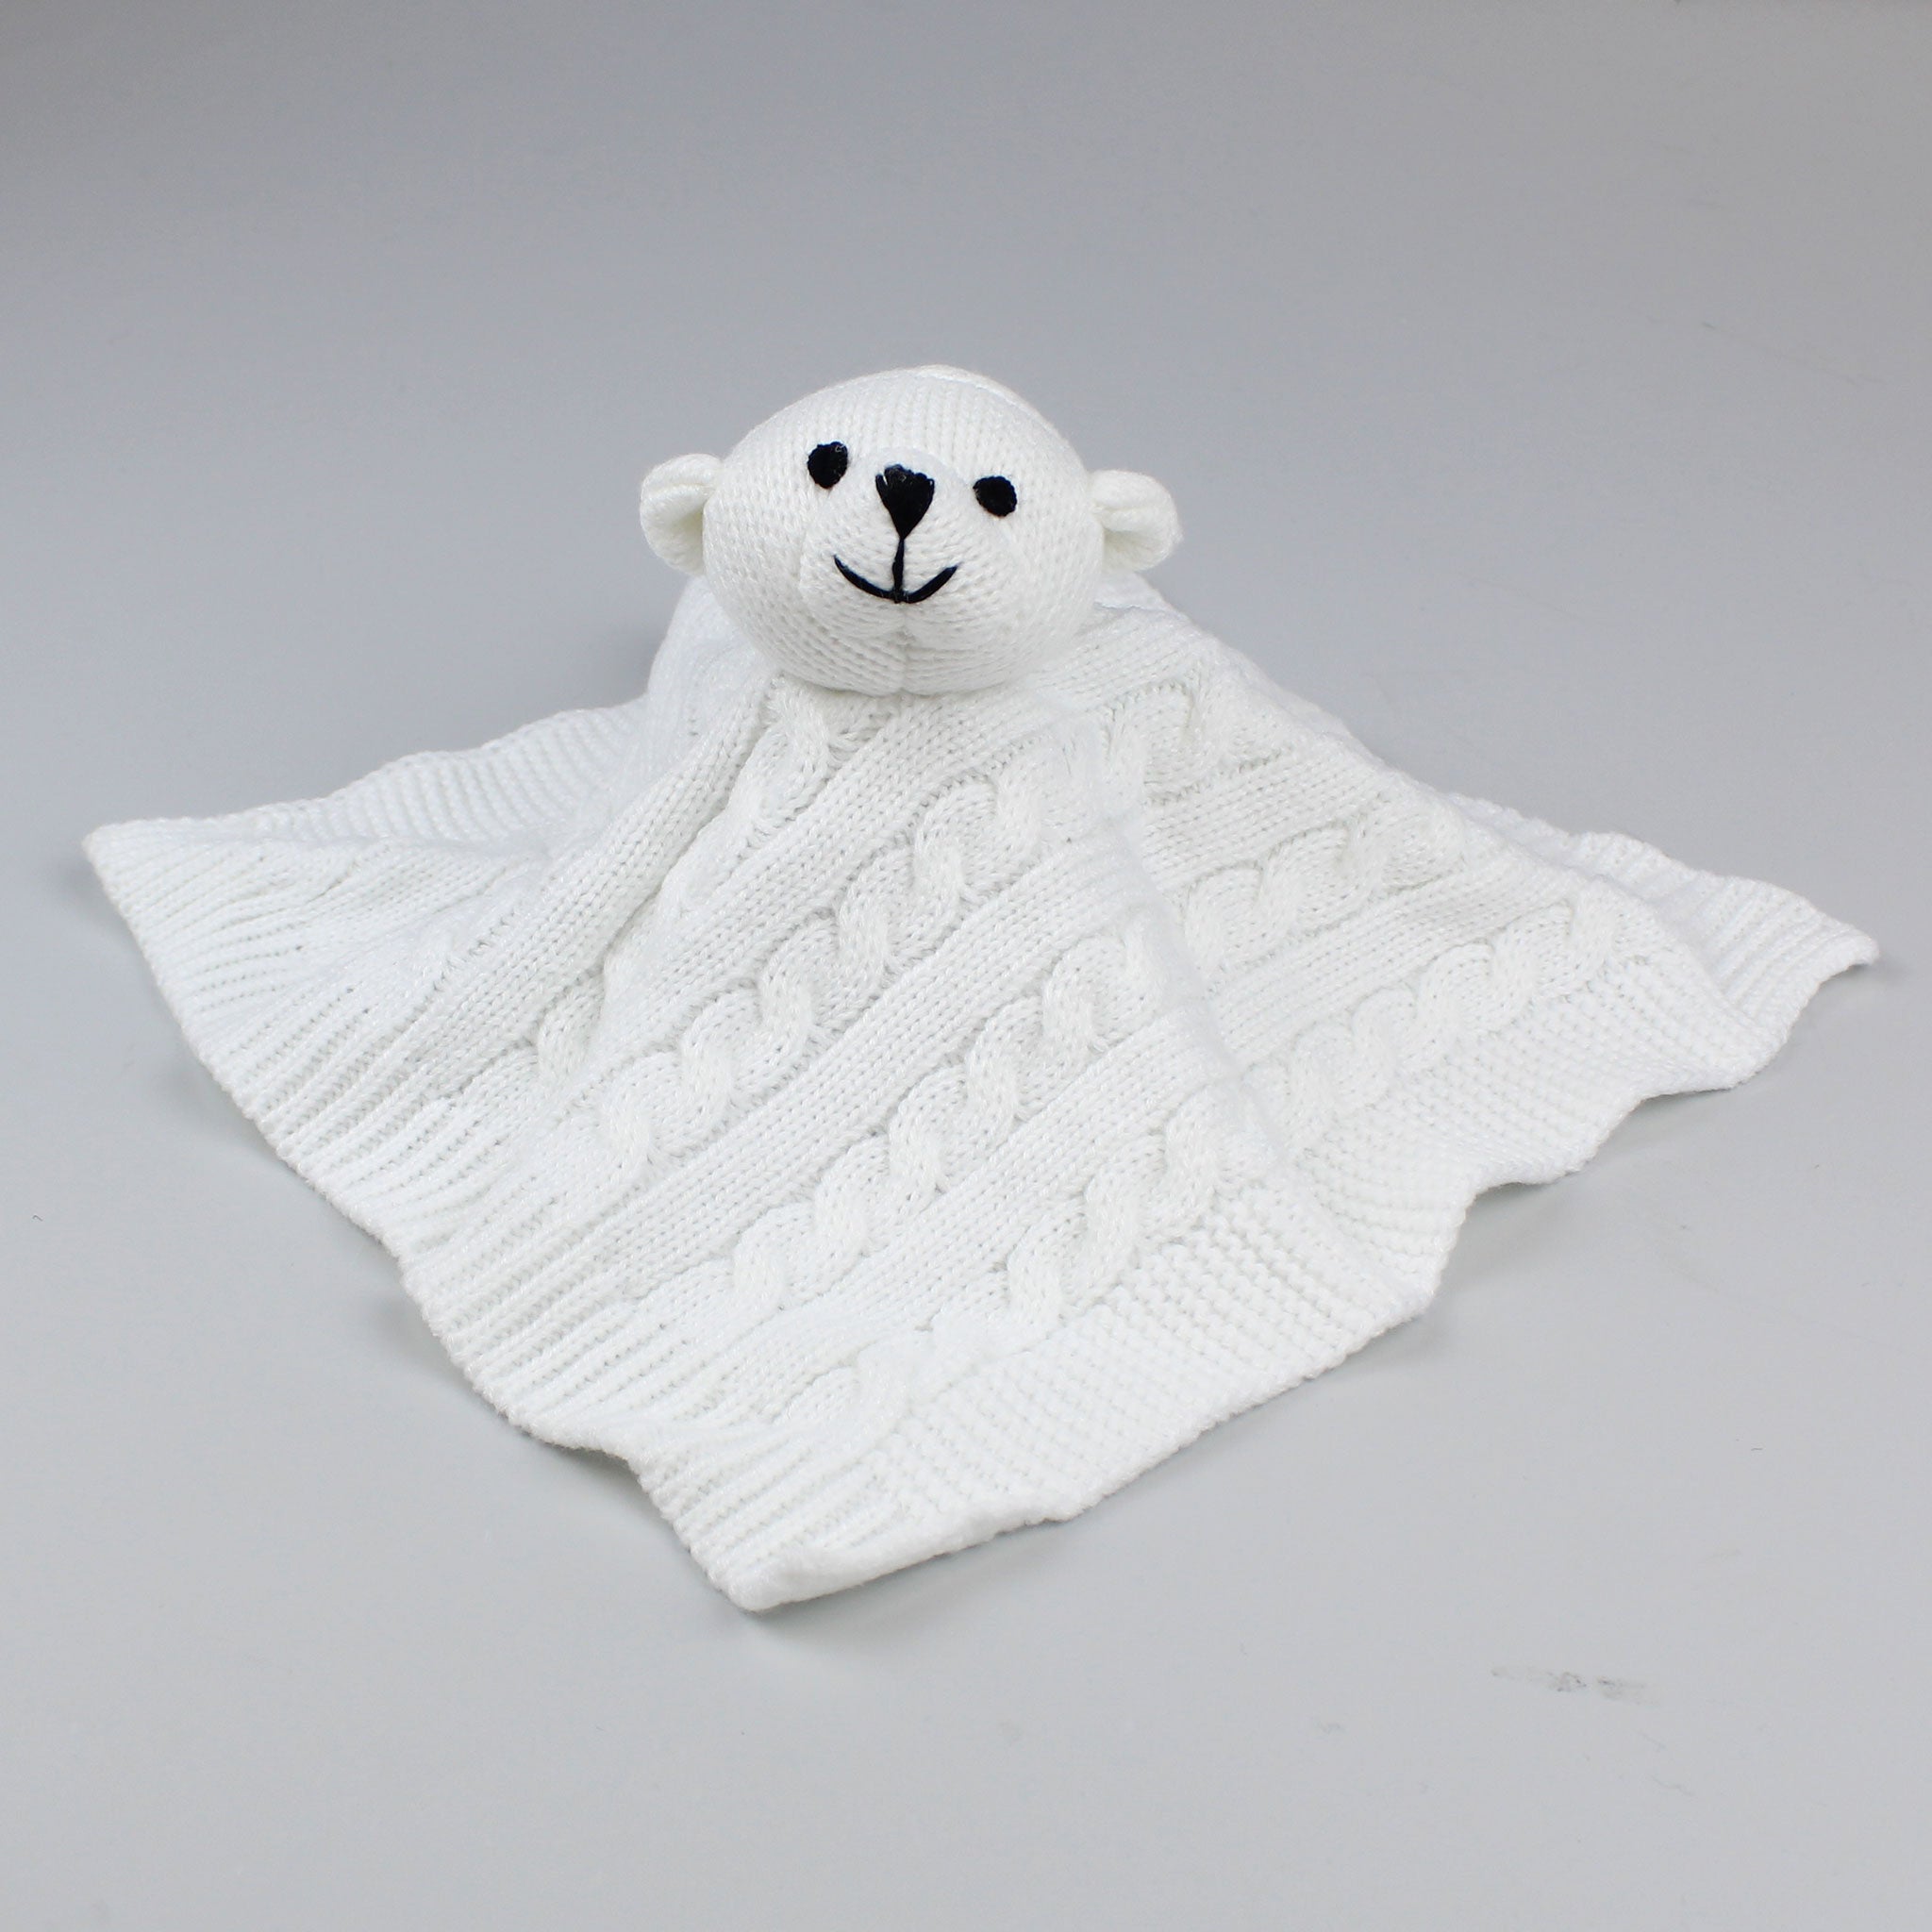 knitted bear comforter